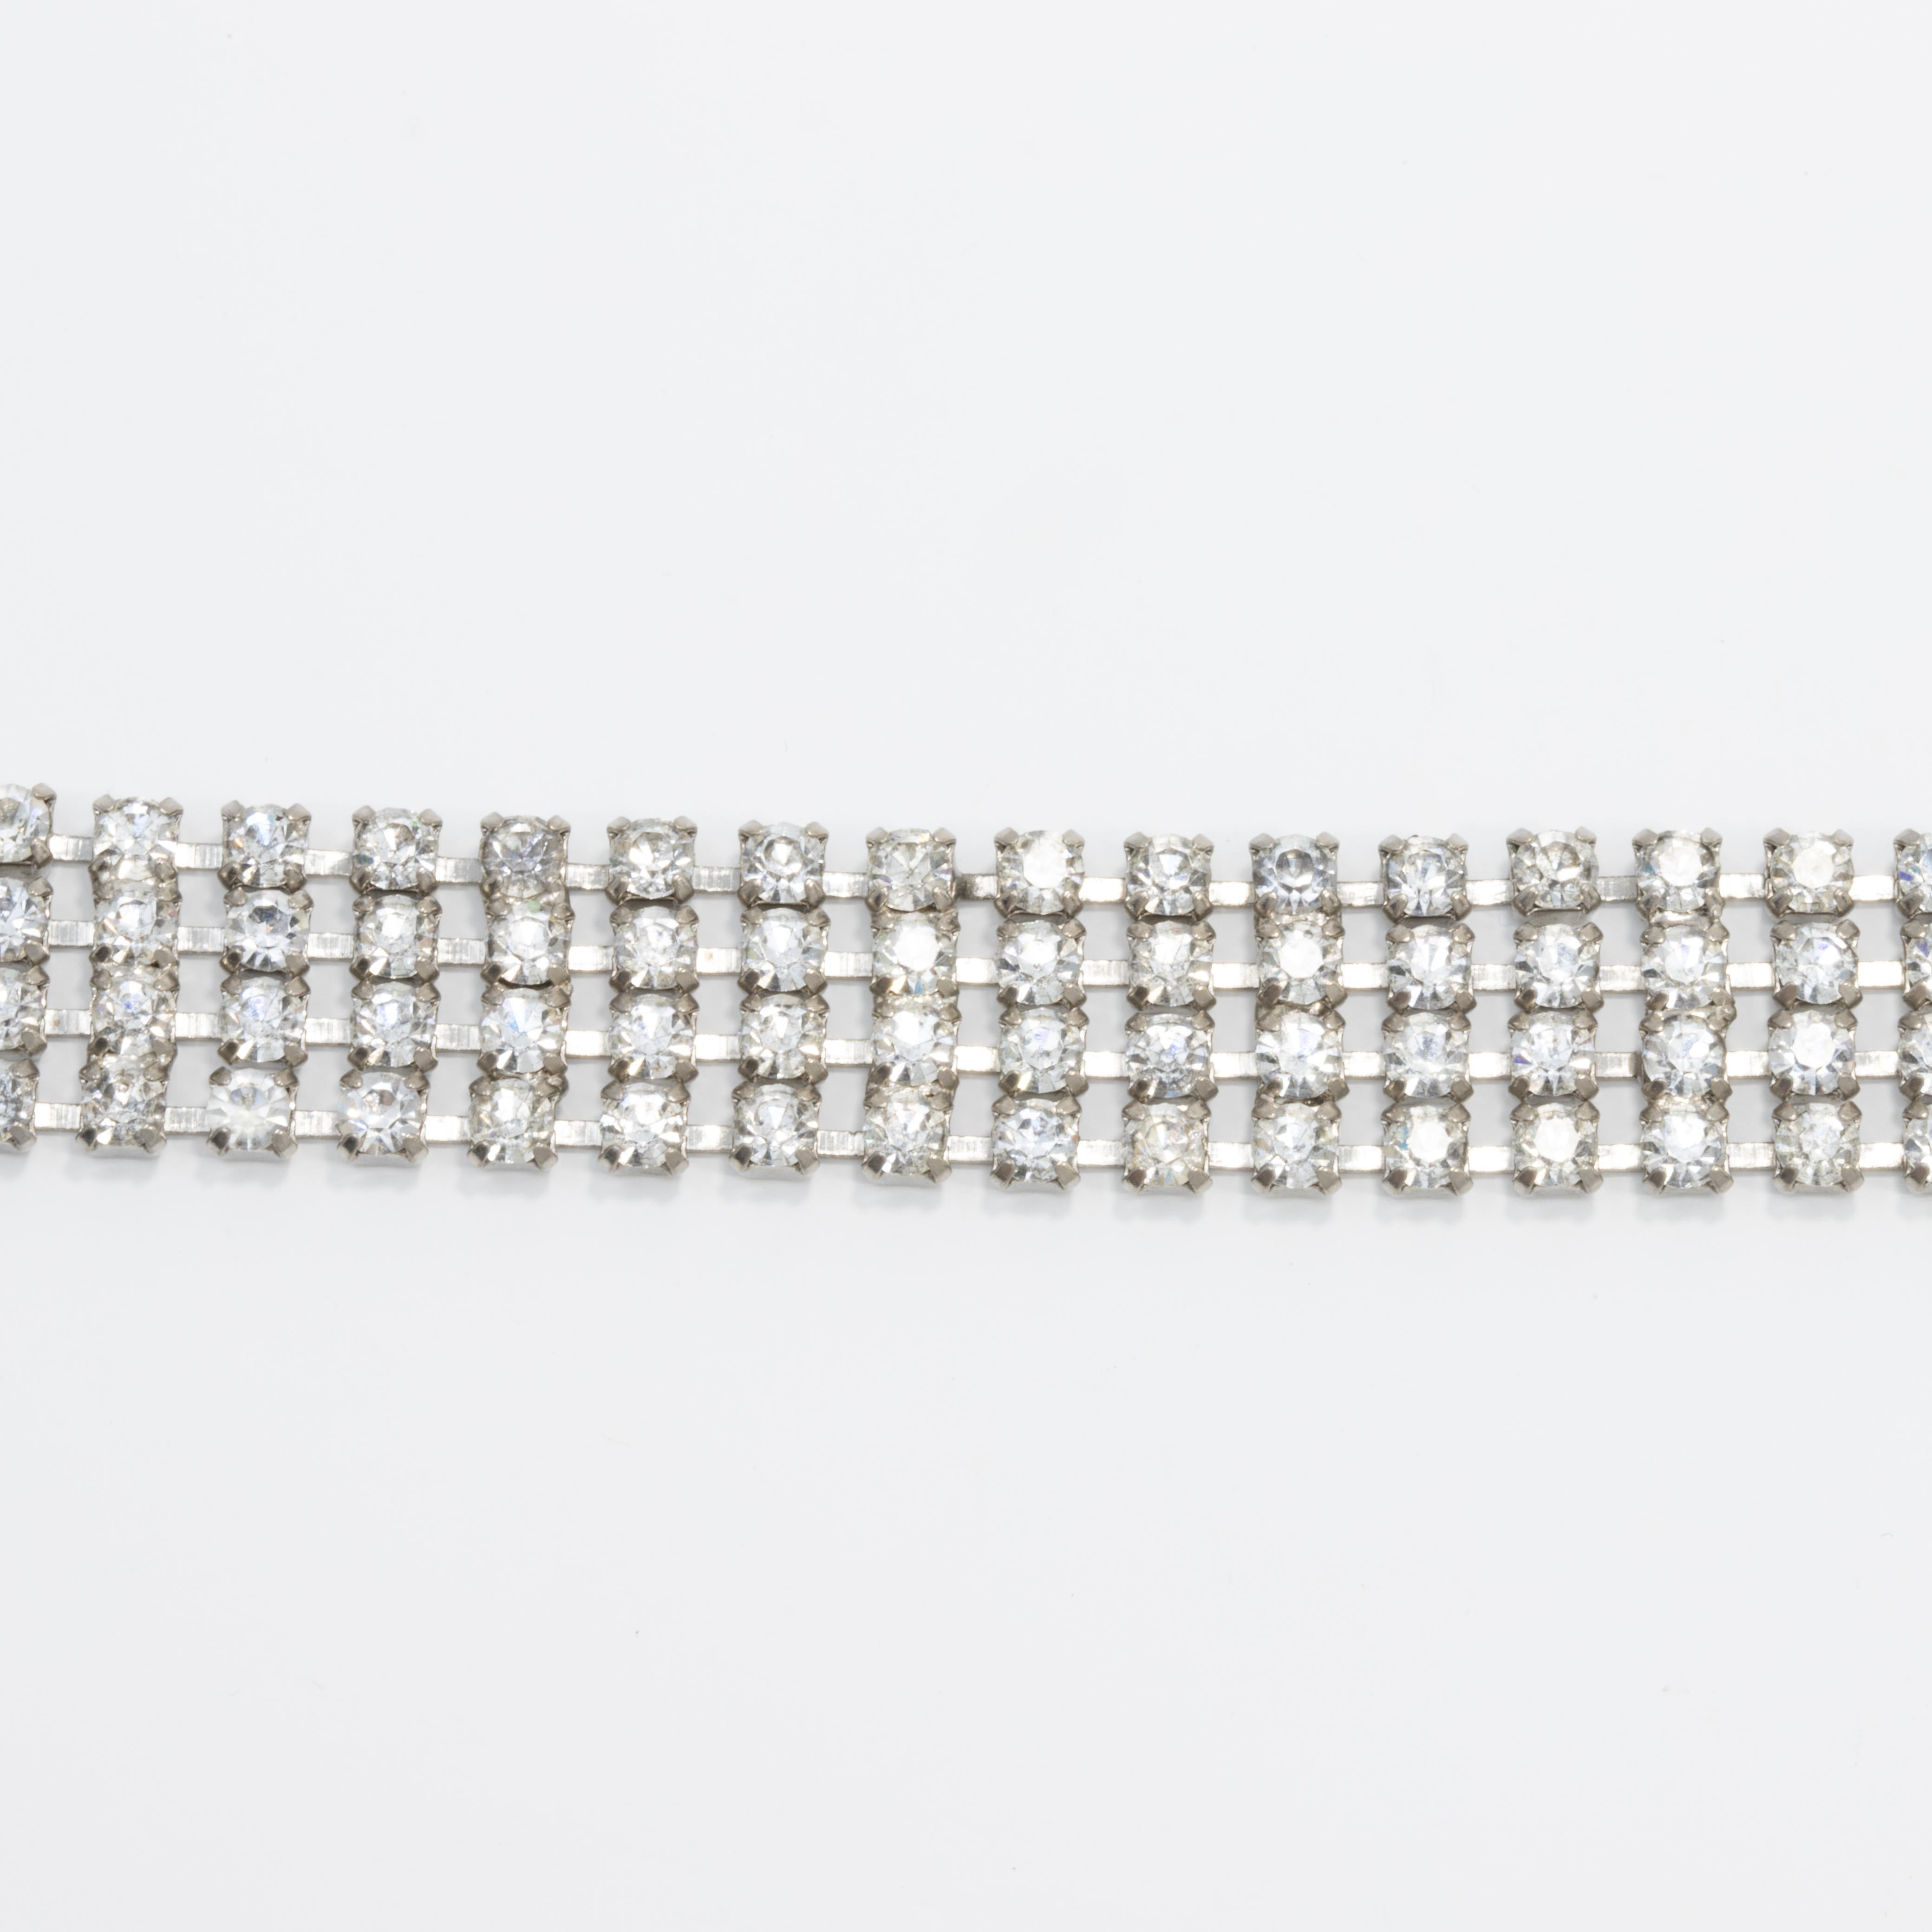 Bracelet Art déco du début des années 1900 comportant quatre rangées de cristaux reliés entre eux, fermé par une boucle déployante.

De couleur argentée.